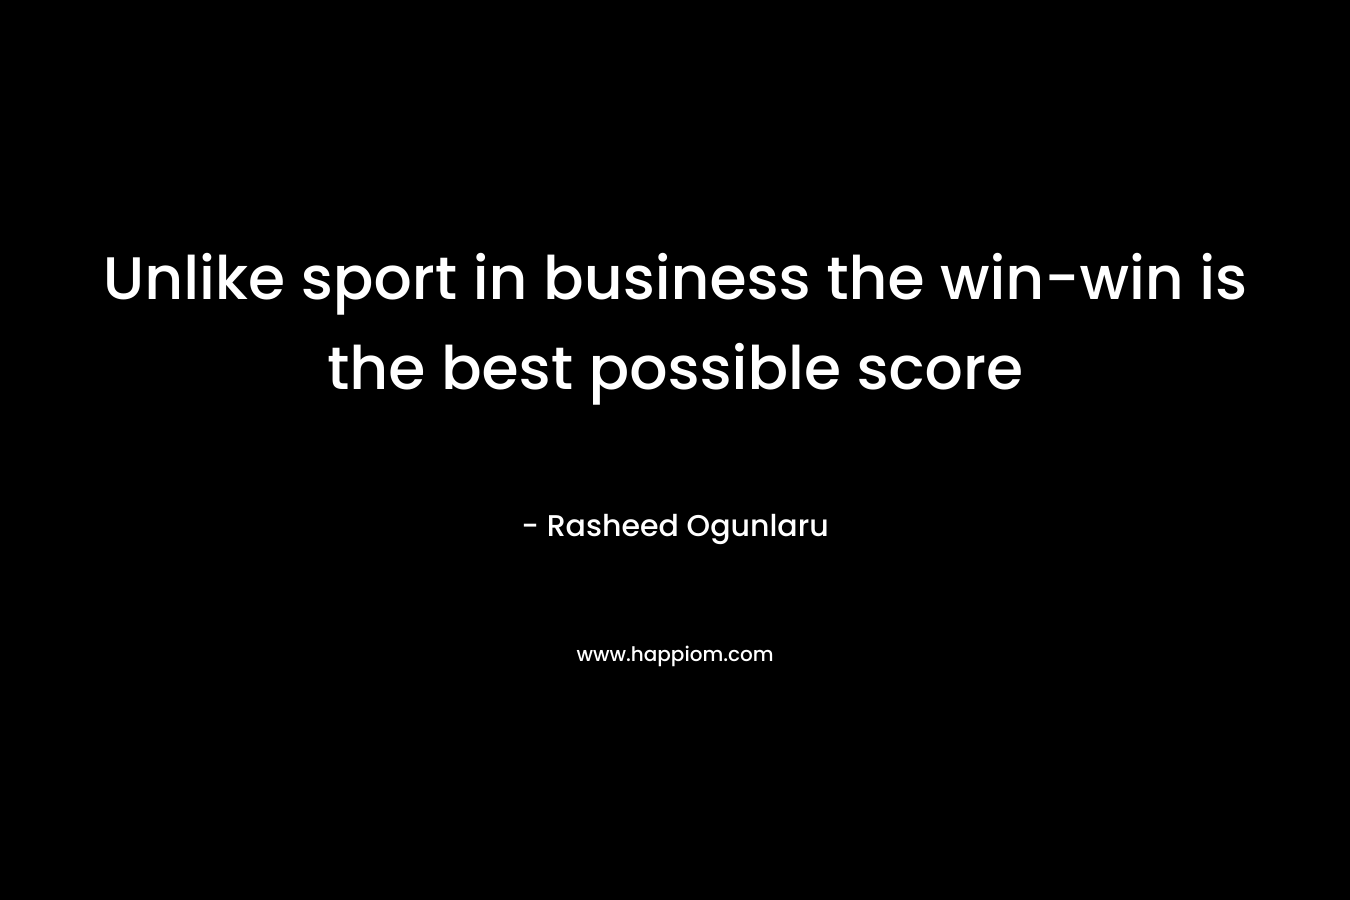 Unlike sport in business the win-win is the best possible score